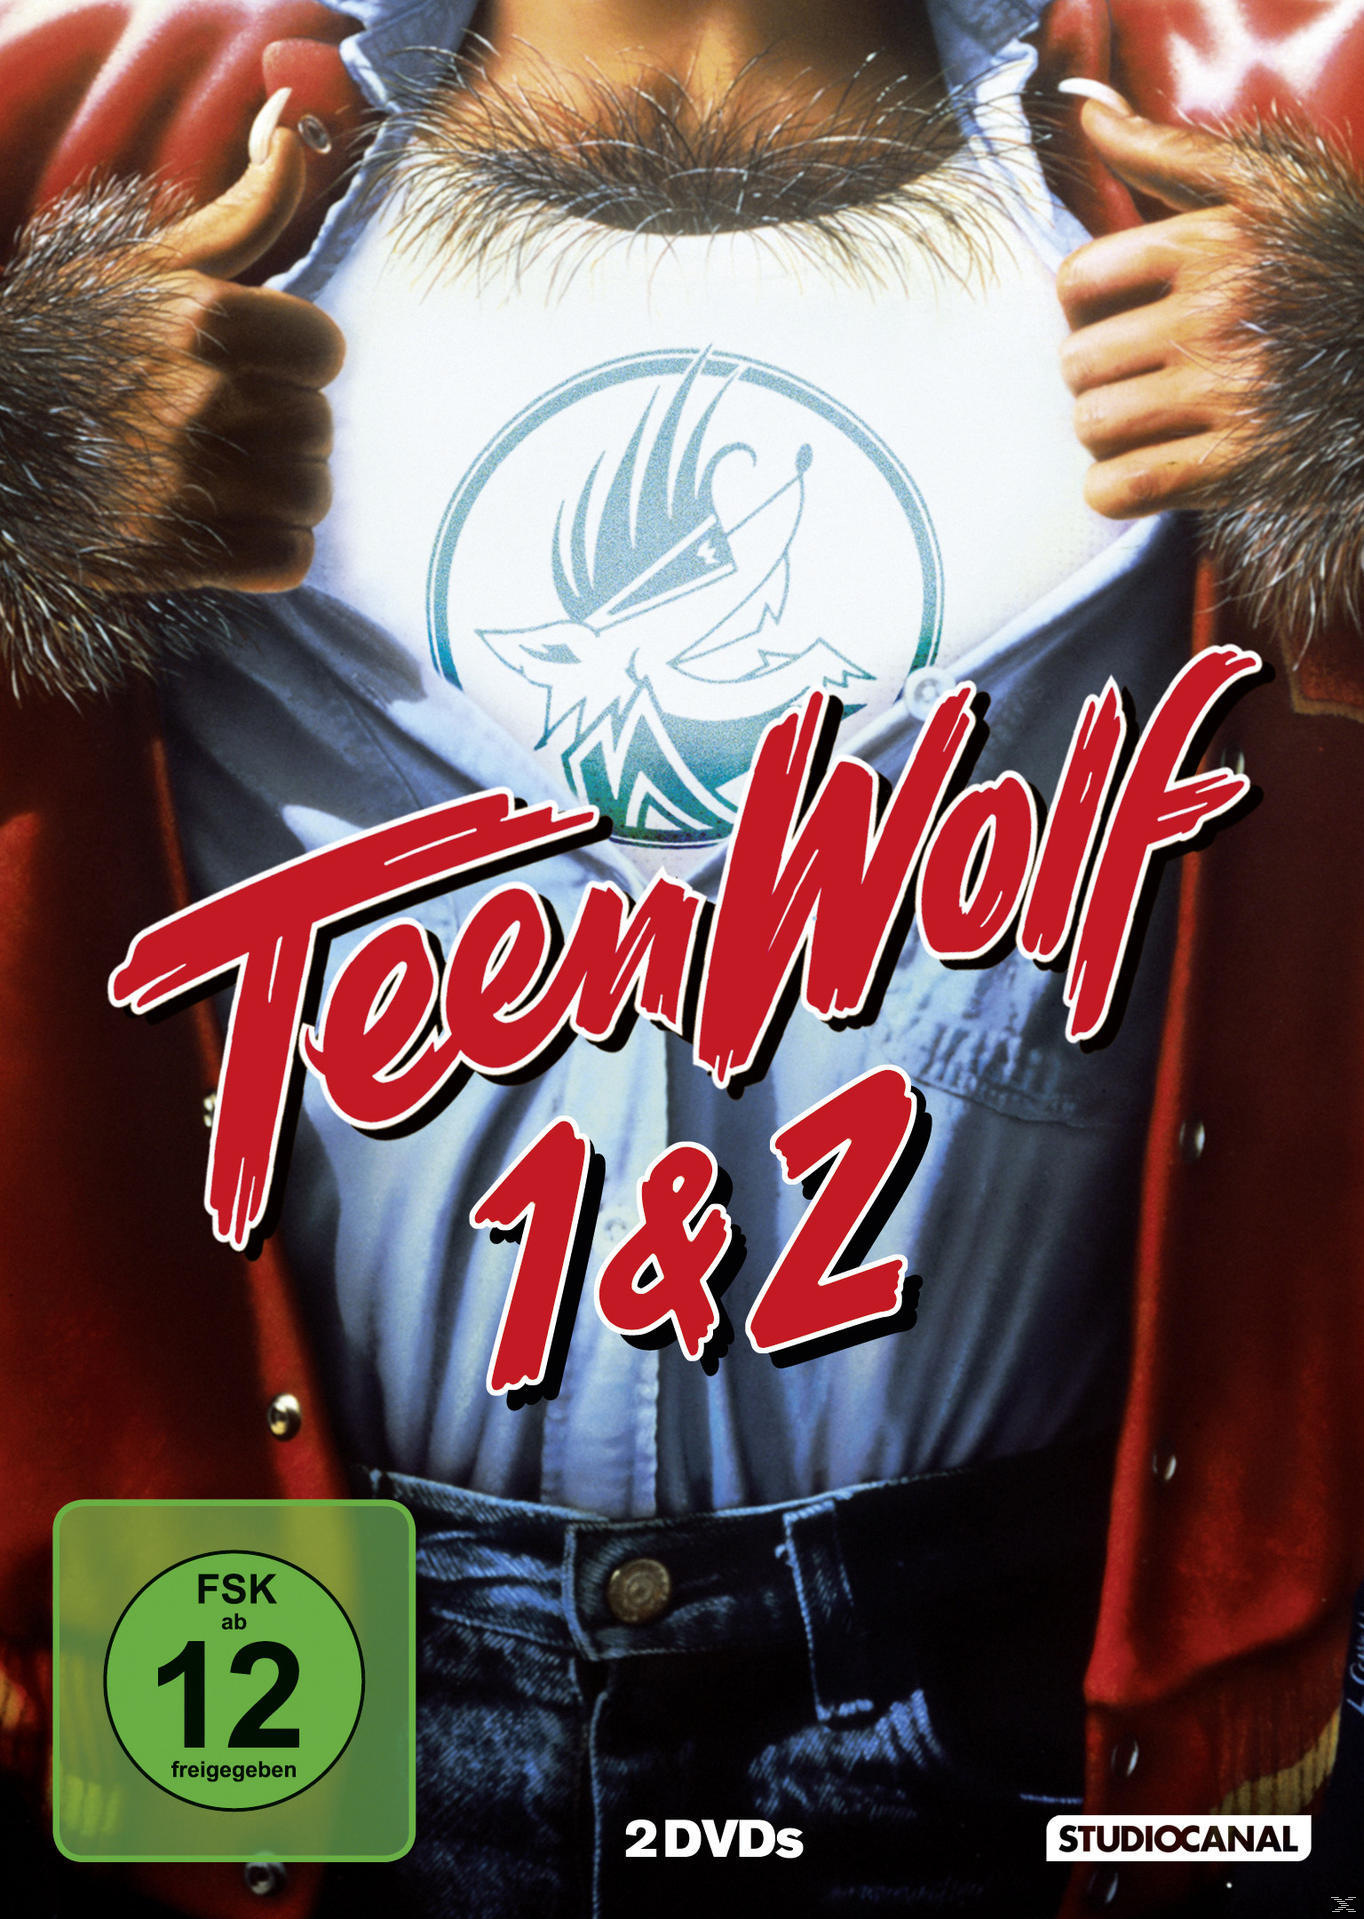 Disc Wolf DVD DVD - / Wolf Teen 2 Teen 2